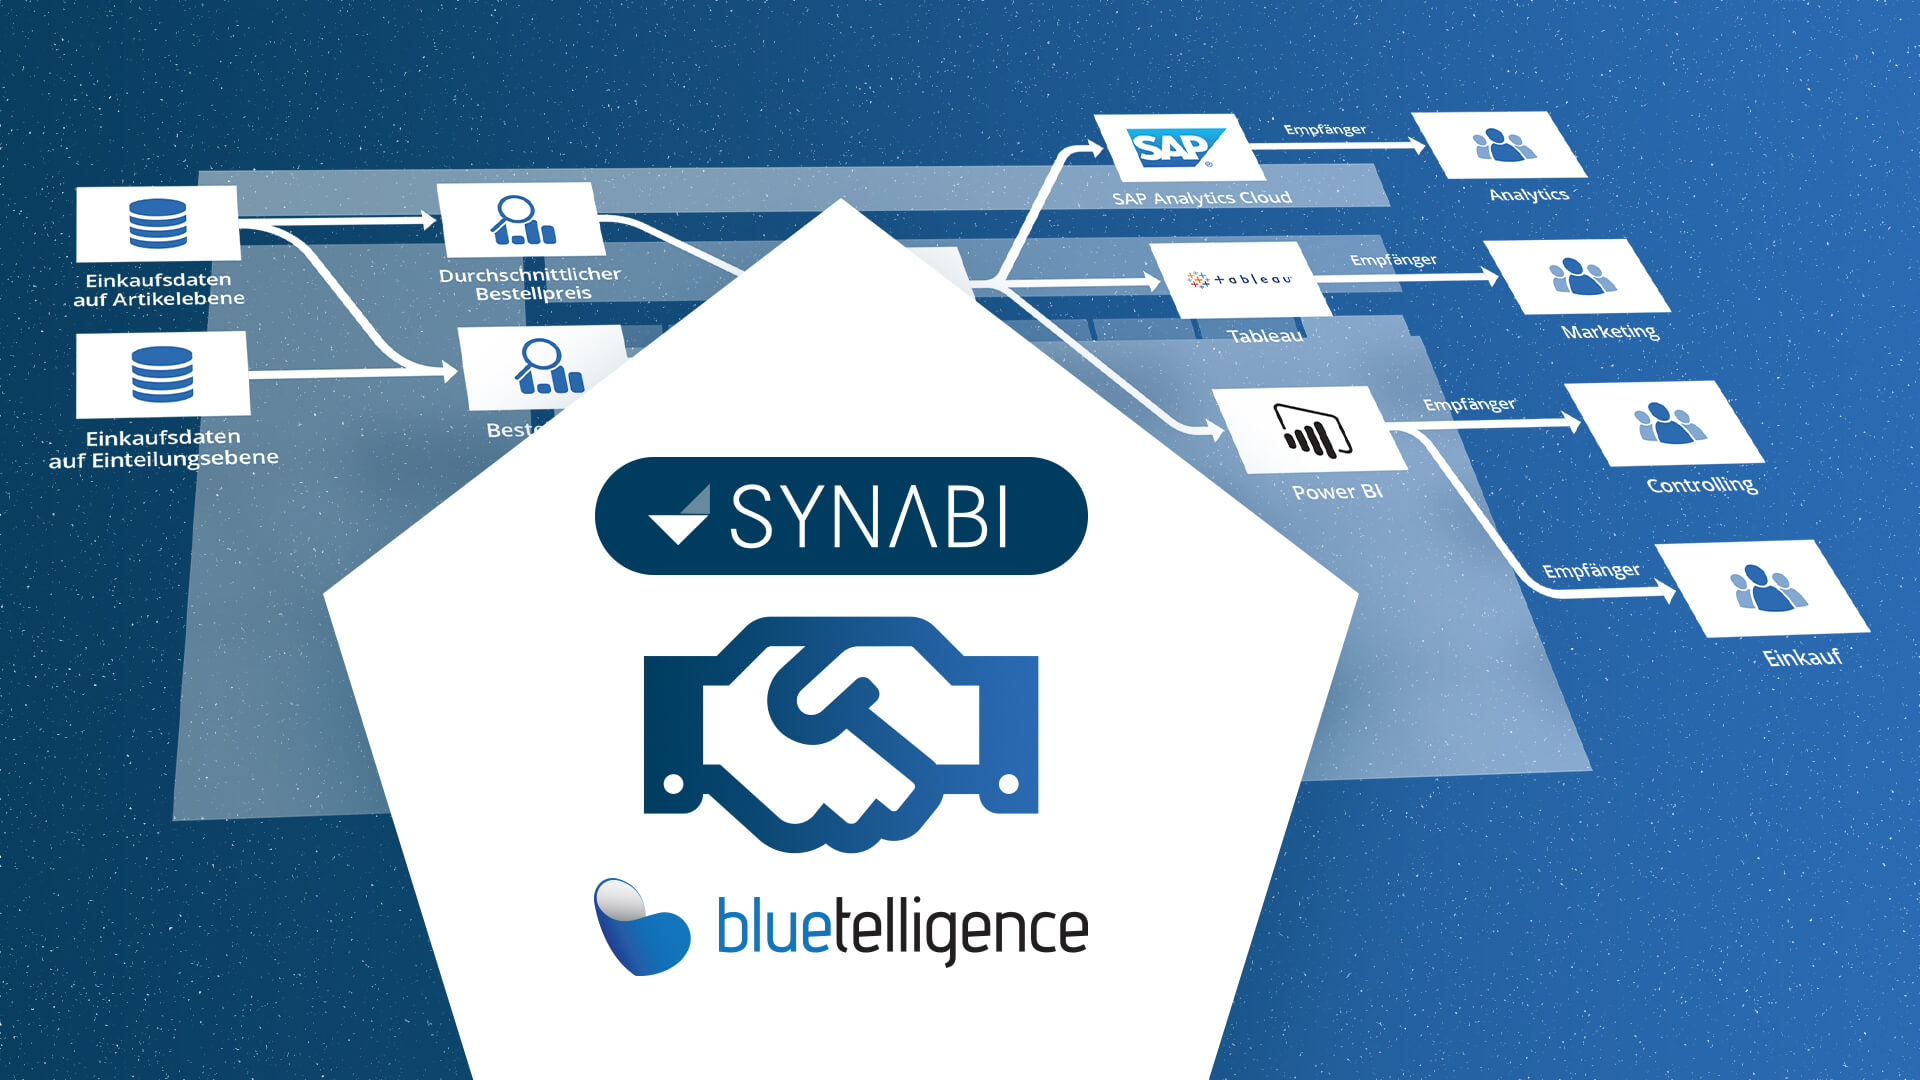 Synabi geht die Partnerschaft mit bluetelligence ein